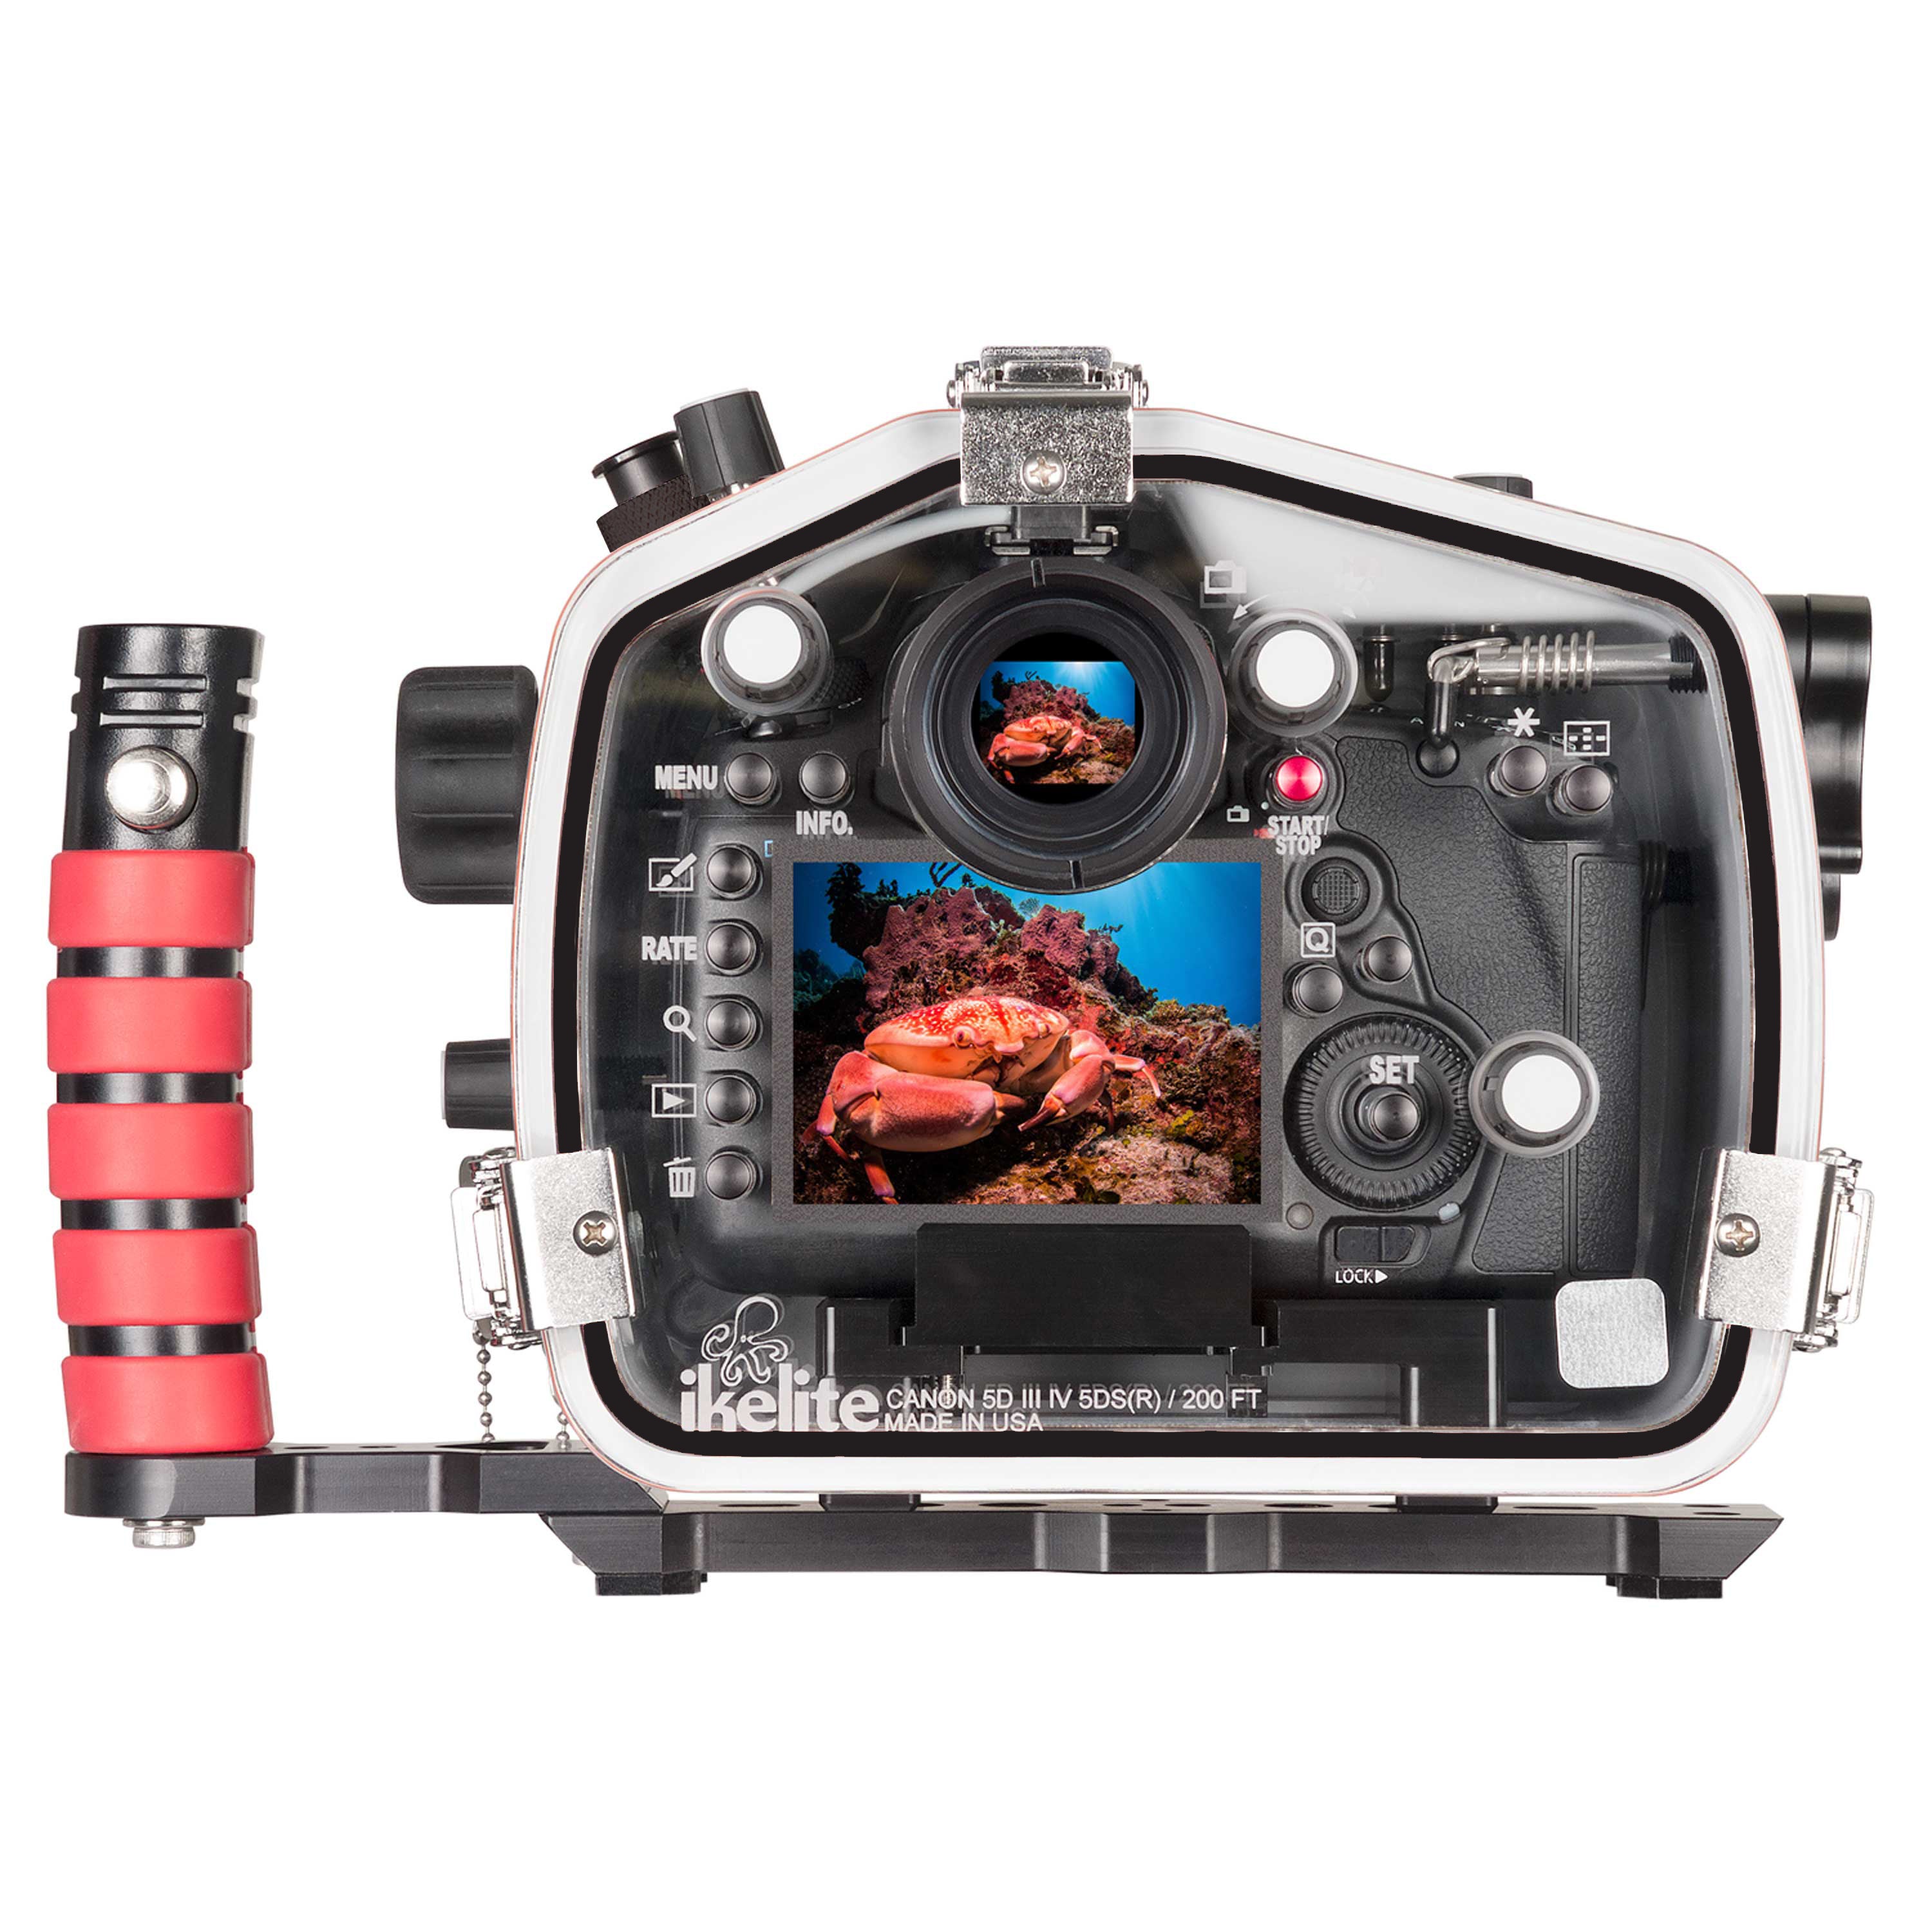 meest reinigen een vergoeding 200DL Underwater Housing for Canon EOS 5D Mark III, 5D Mark IV, 5DS, 5